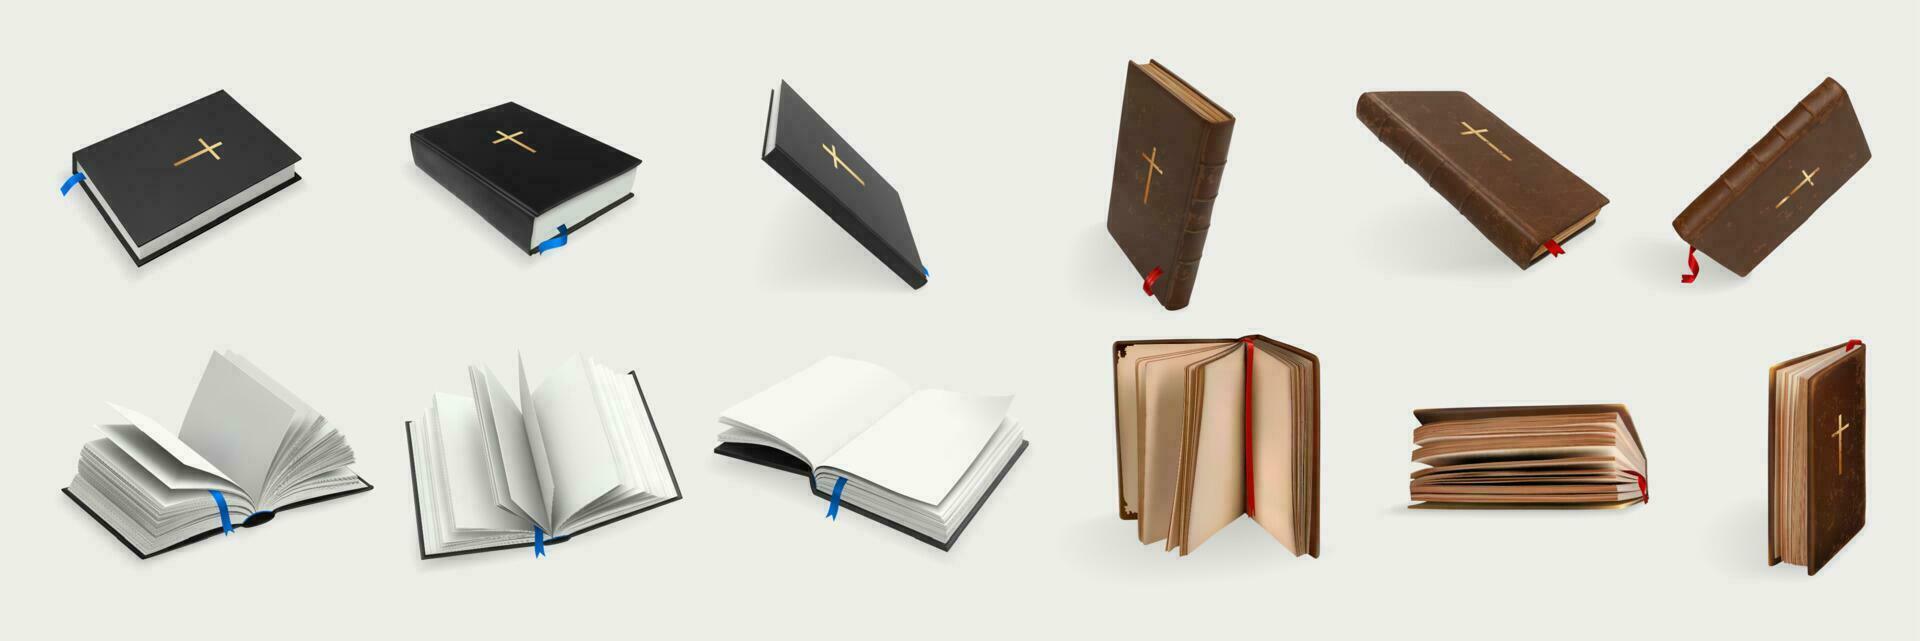 realistisch christen heilig Bijbel reeks verzameling vector